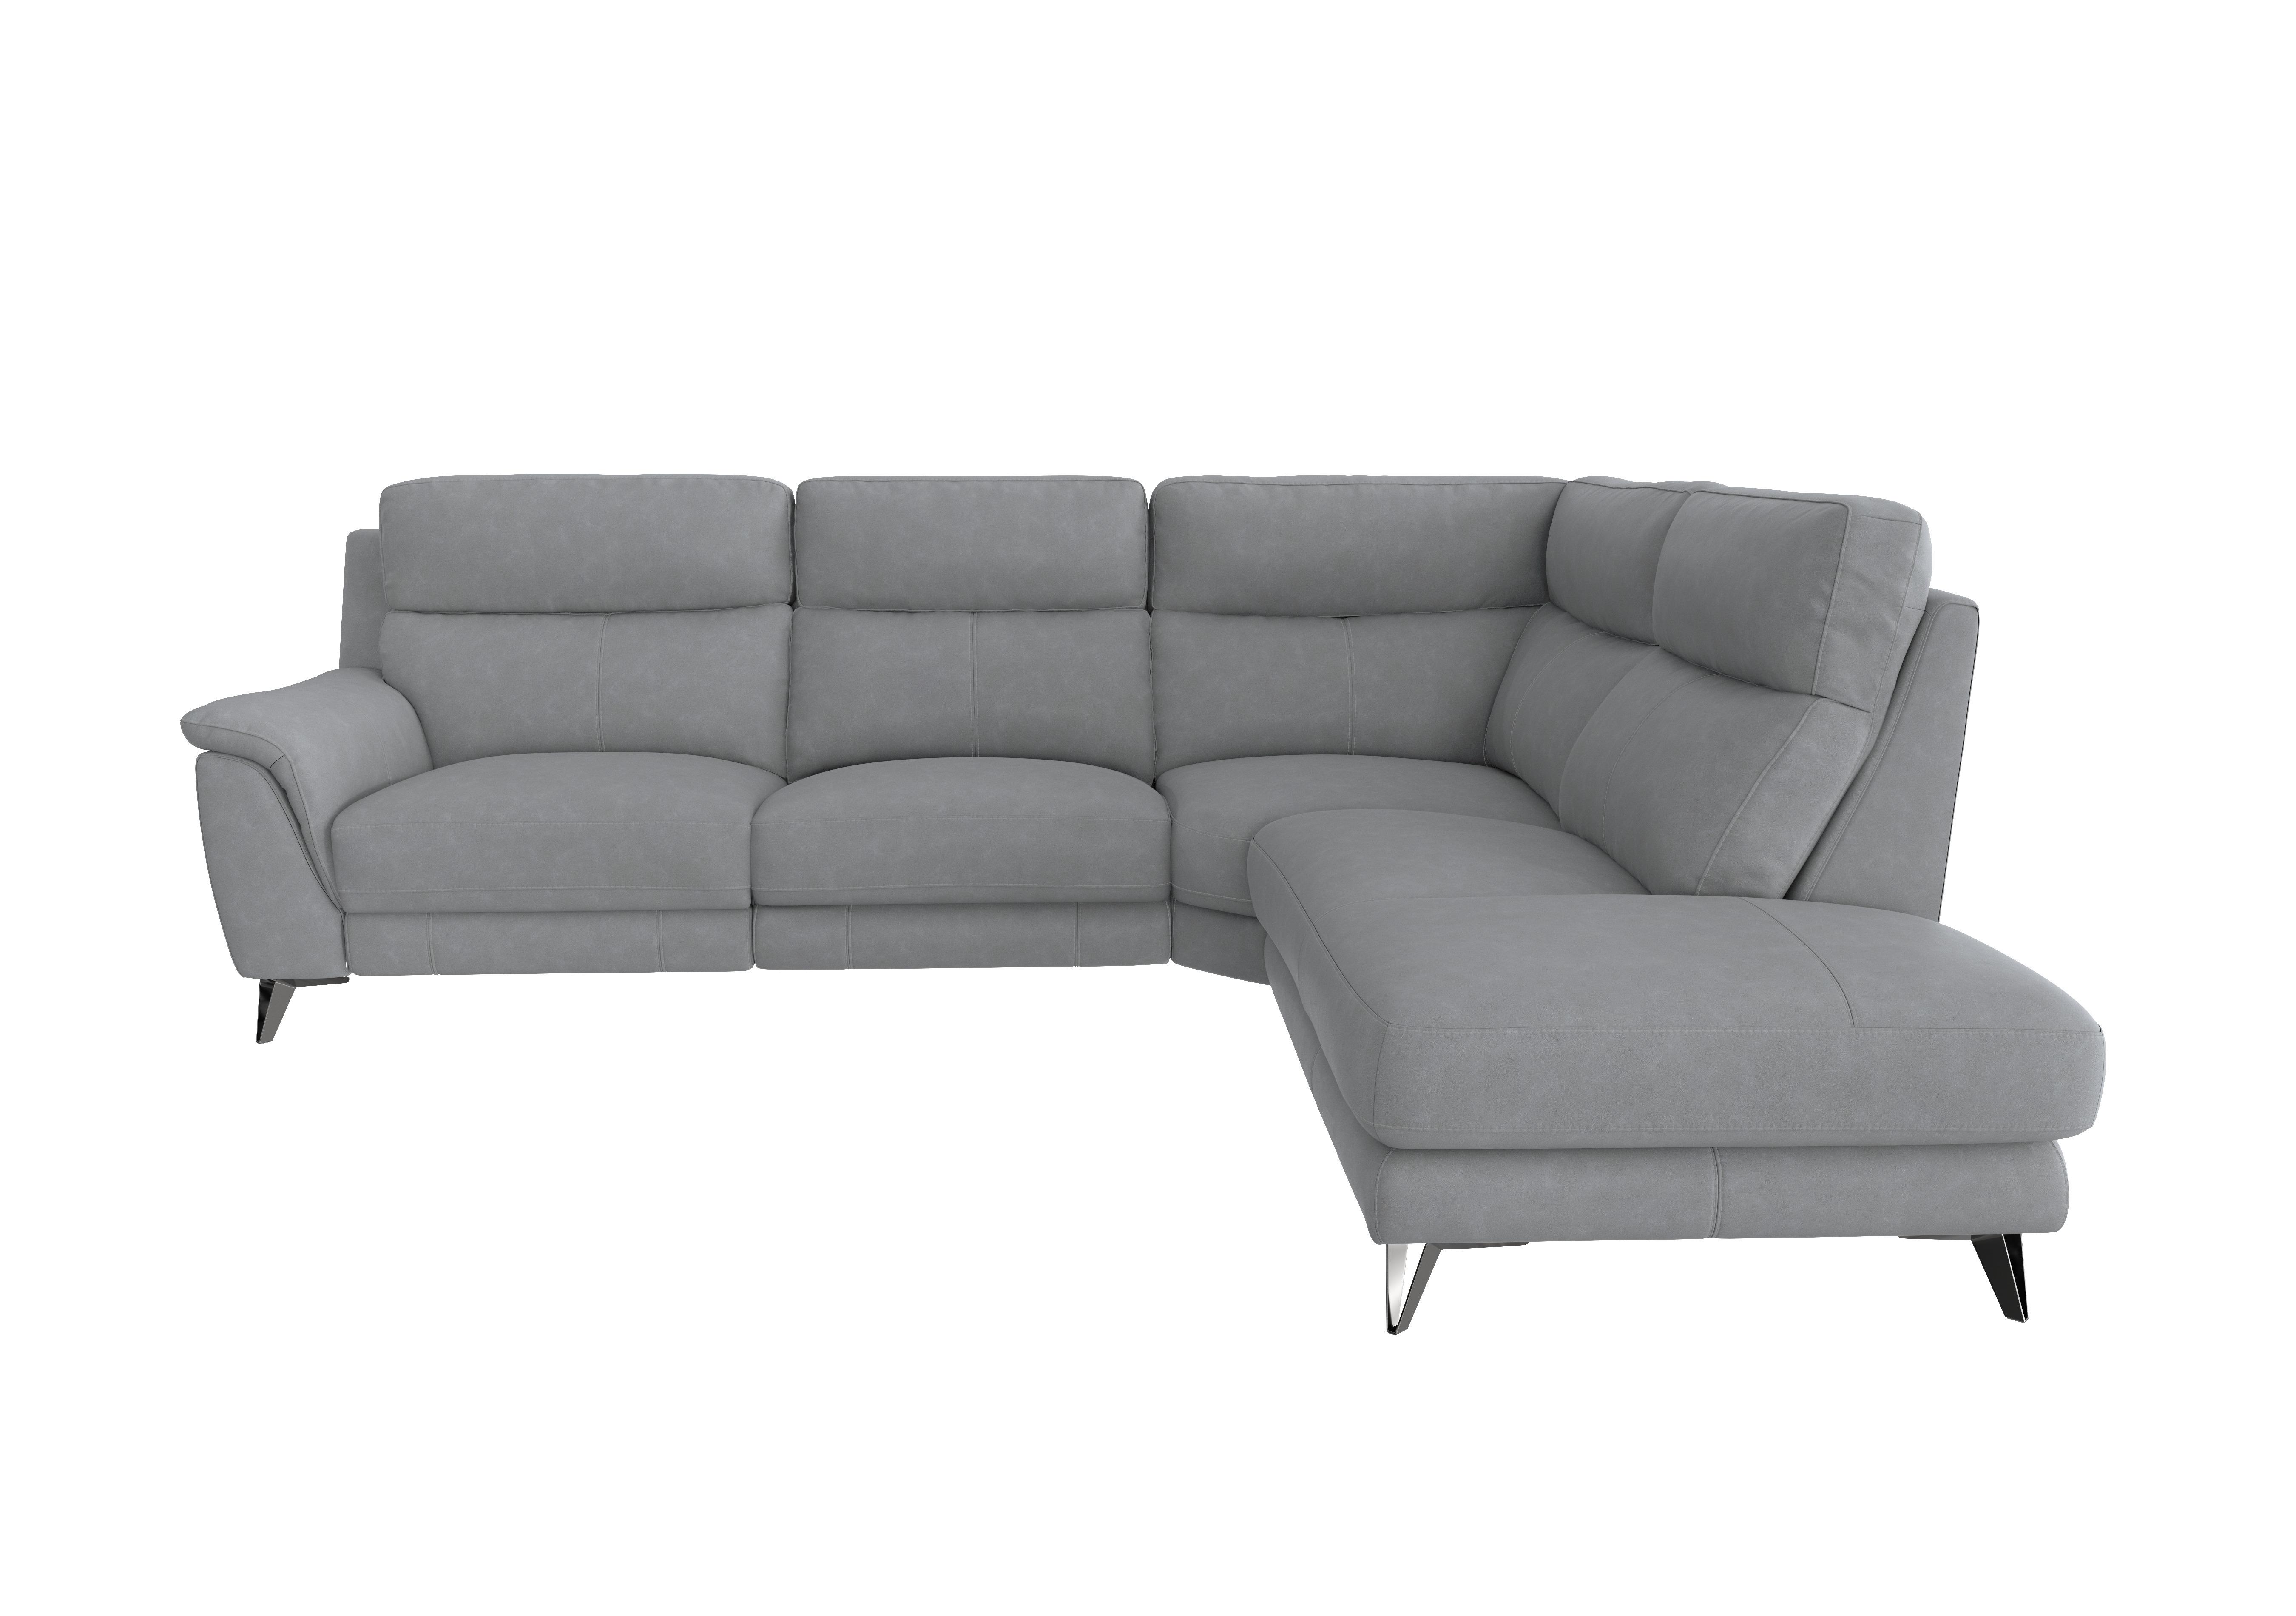 Contempo 3 Seater Chaise End Fabric Sofa in Bfa-Ori-R07 Bluish Grey on Furniture Village